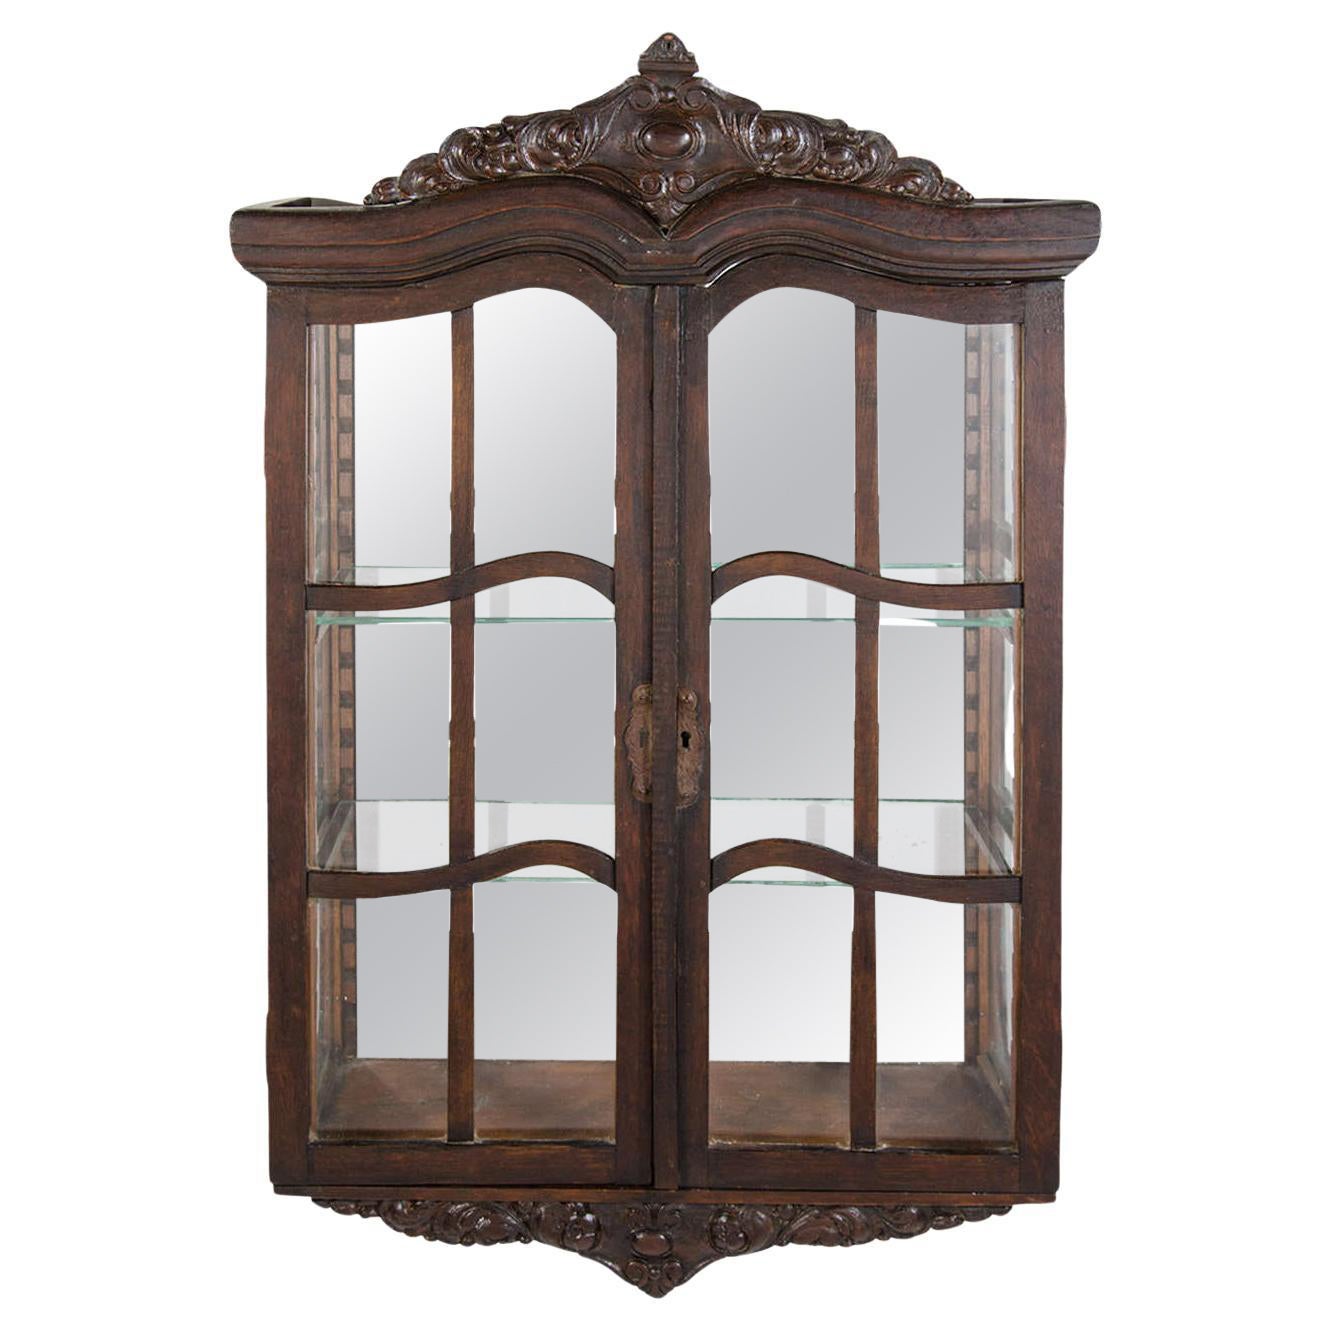 Cabinet de curiosité ancien de style victorien avec designs en Wood sculptés à la main